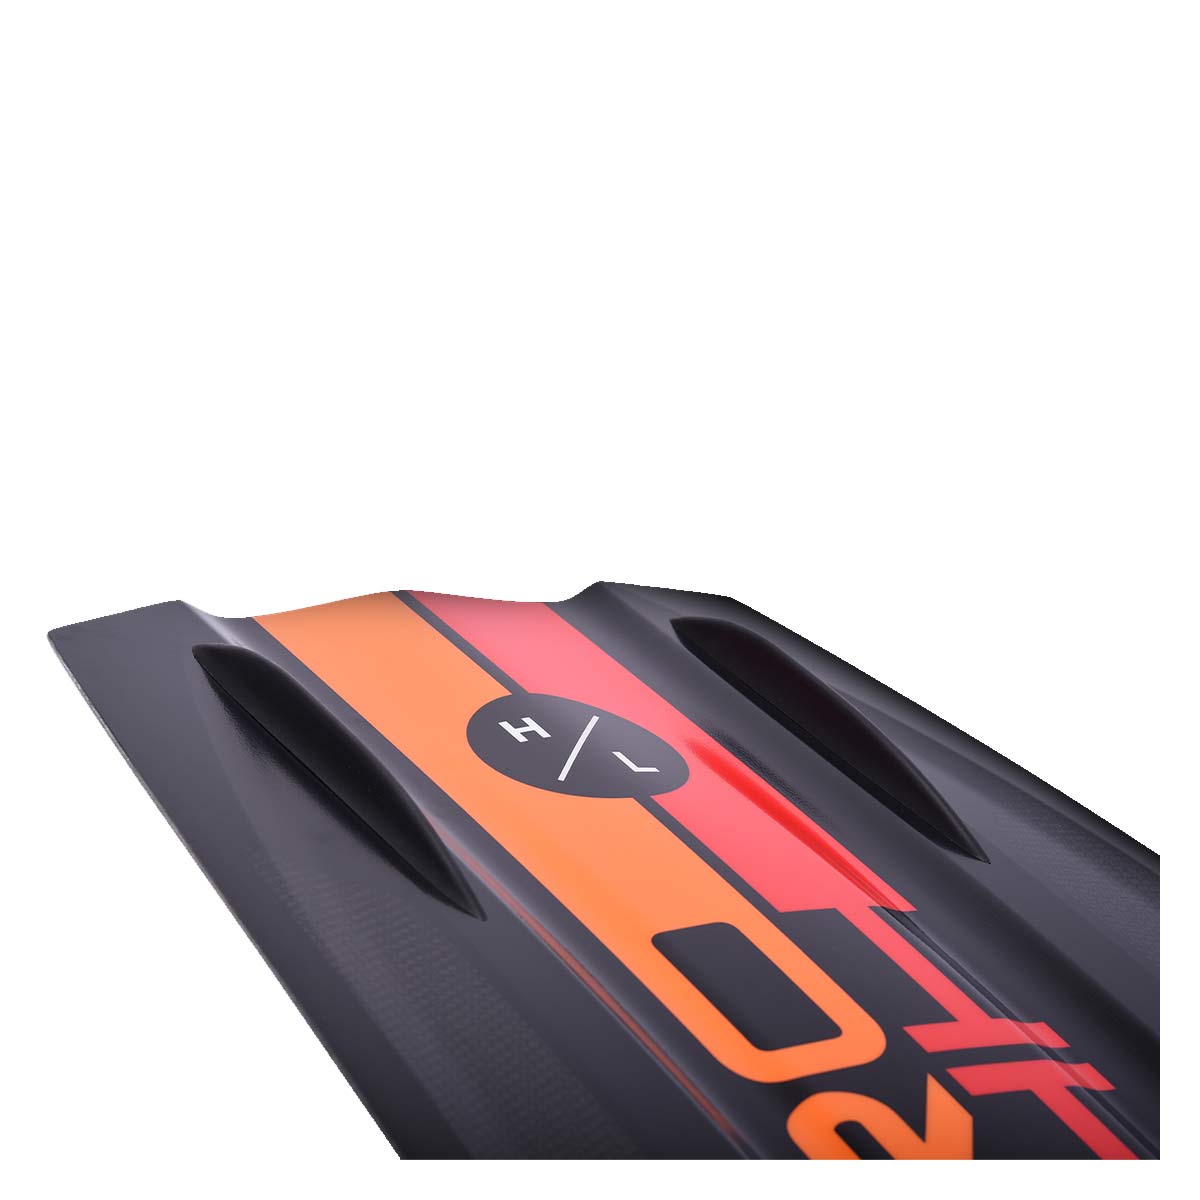 Hyperlite Rusty Pro Wakeboard w/ Team X Bindings